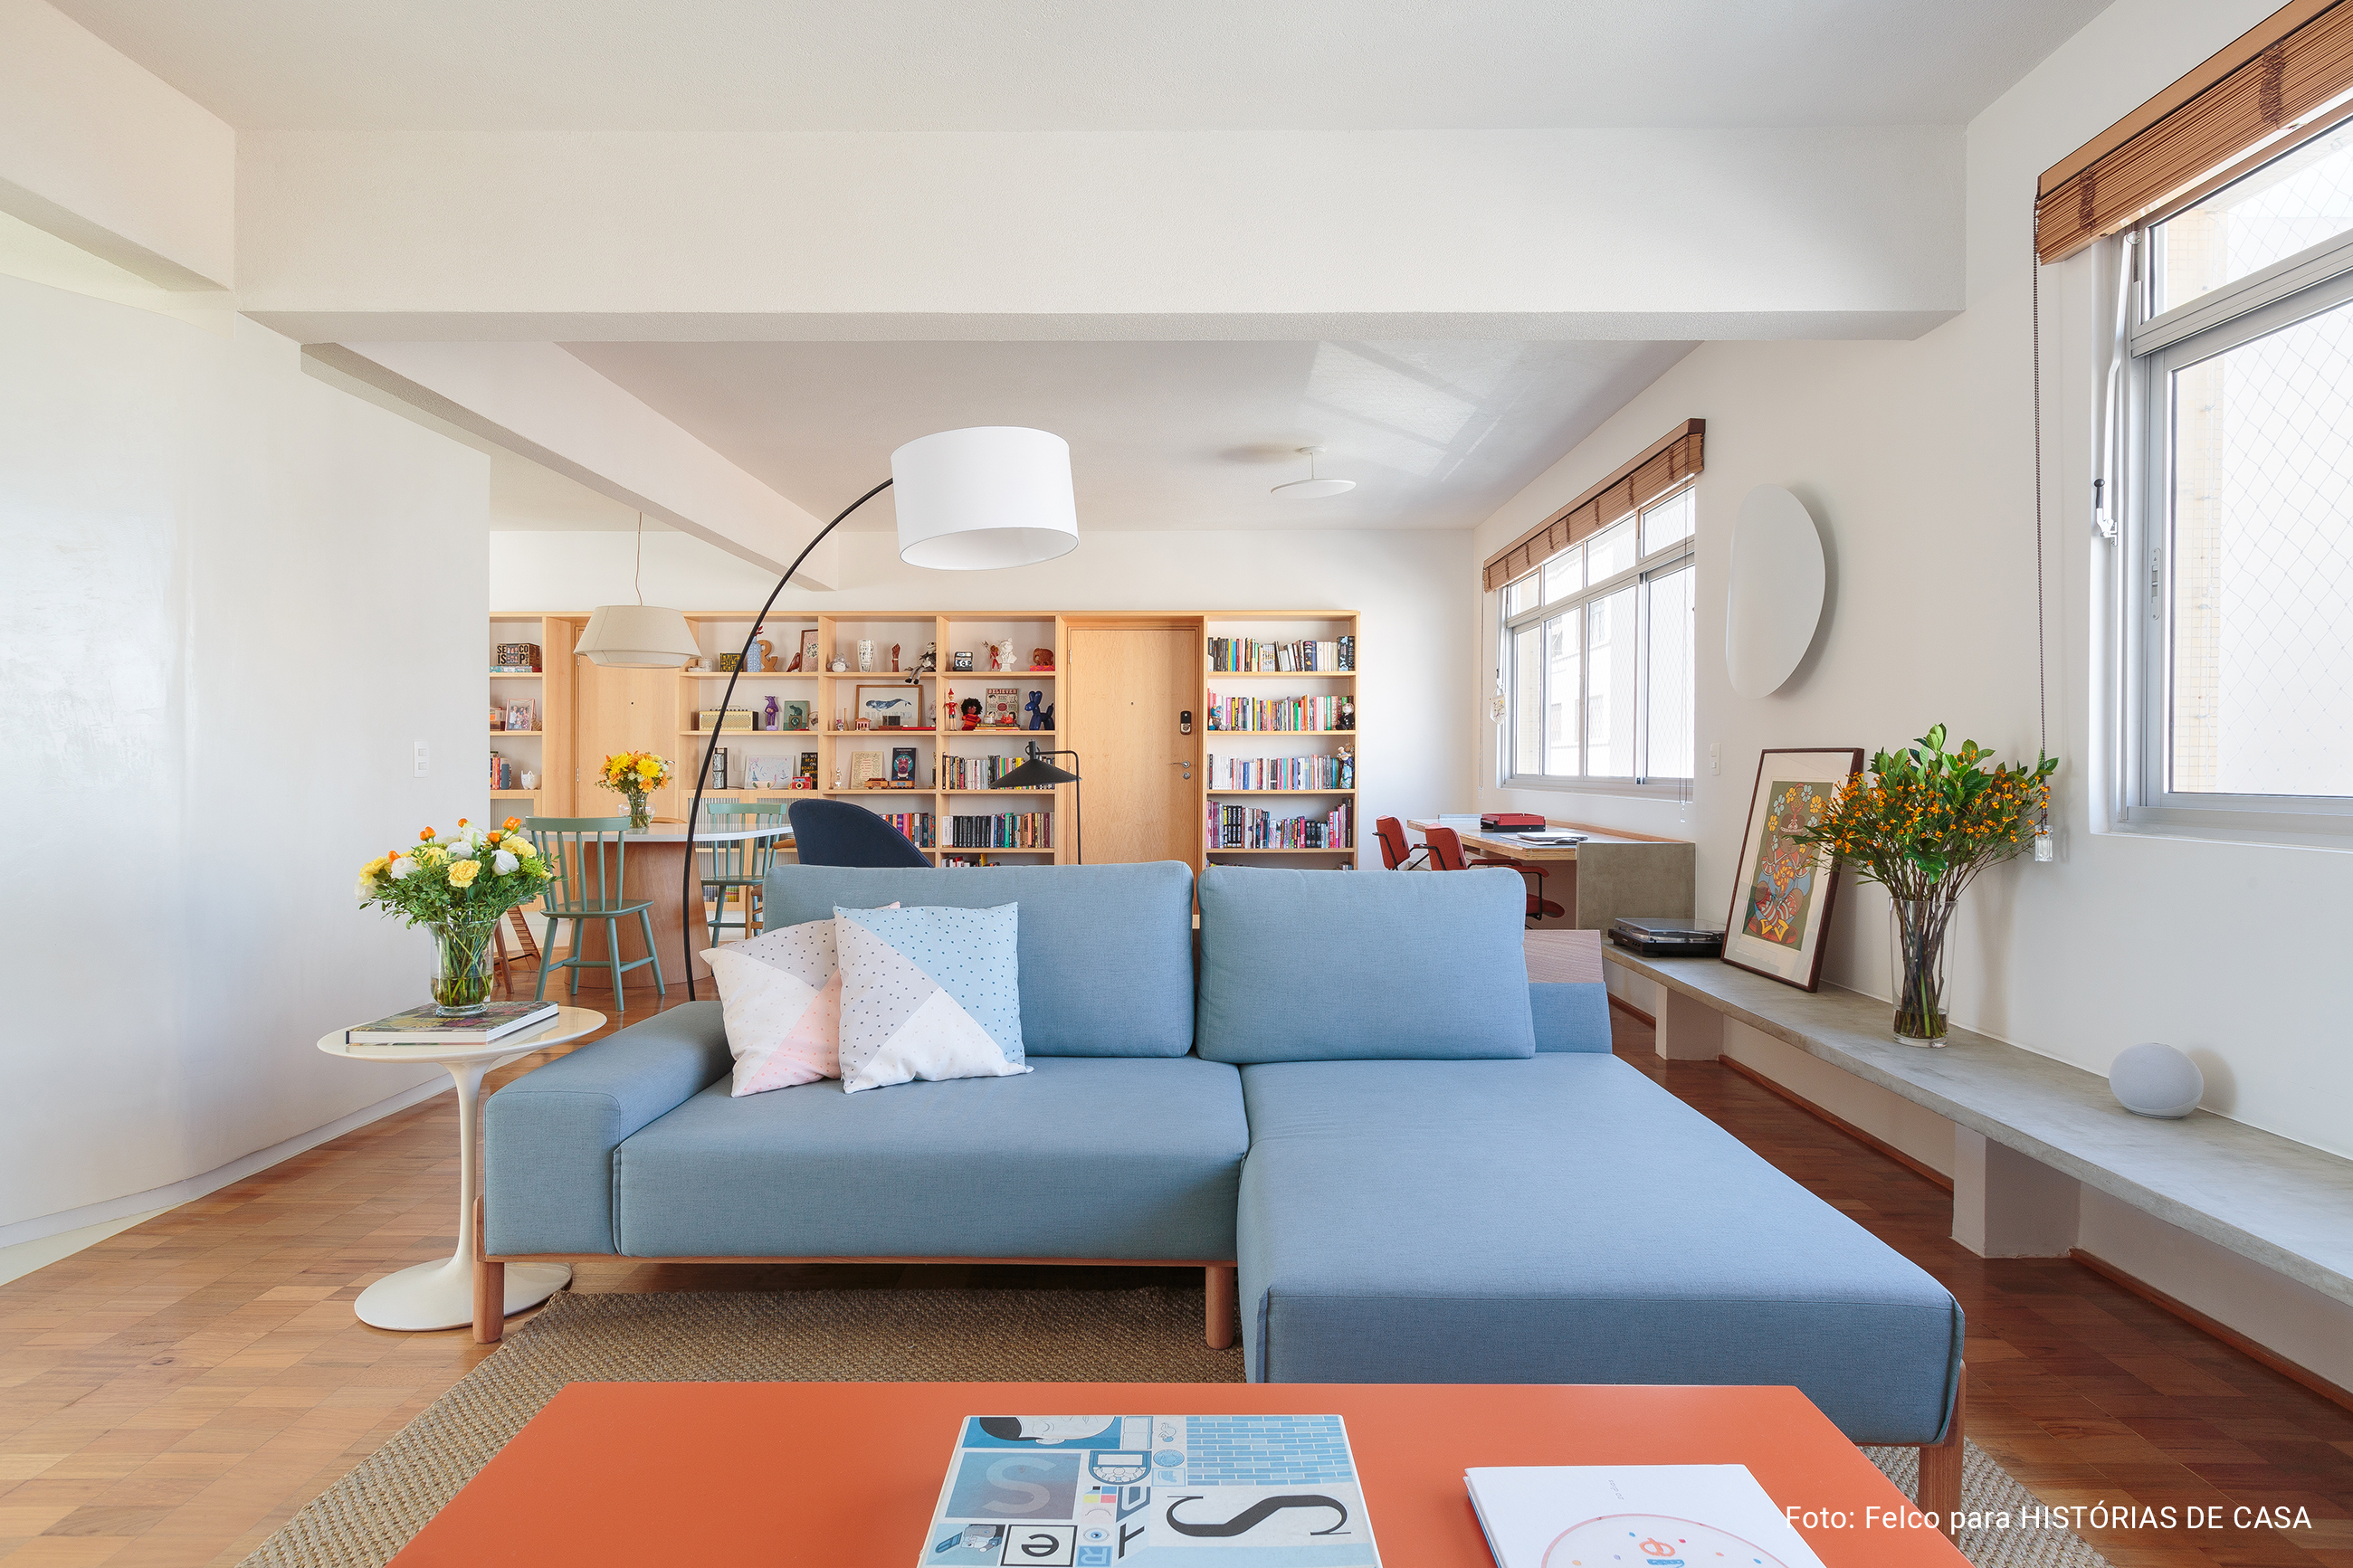 Apartamento integrado com sofá azul e marcenaria sob medida